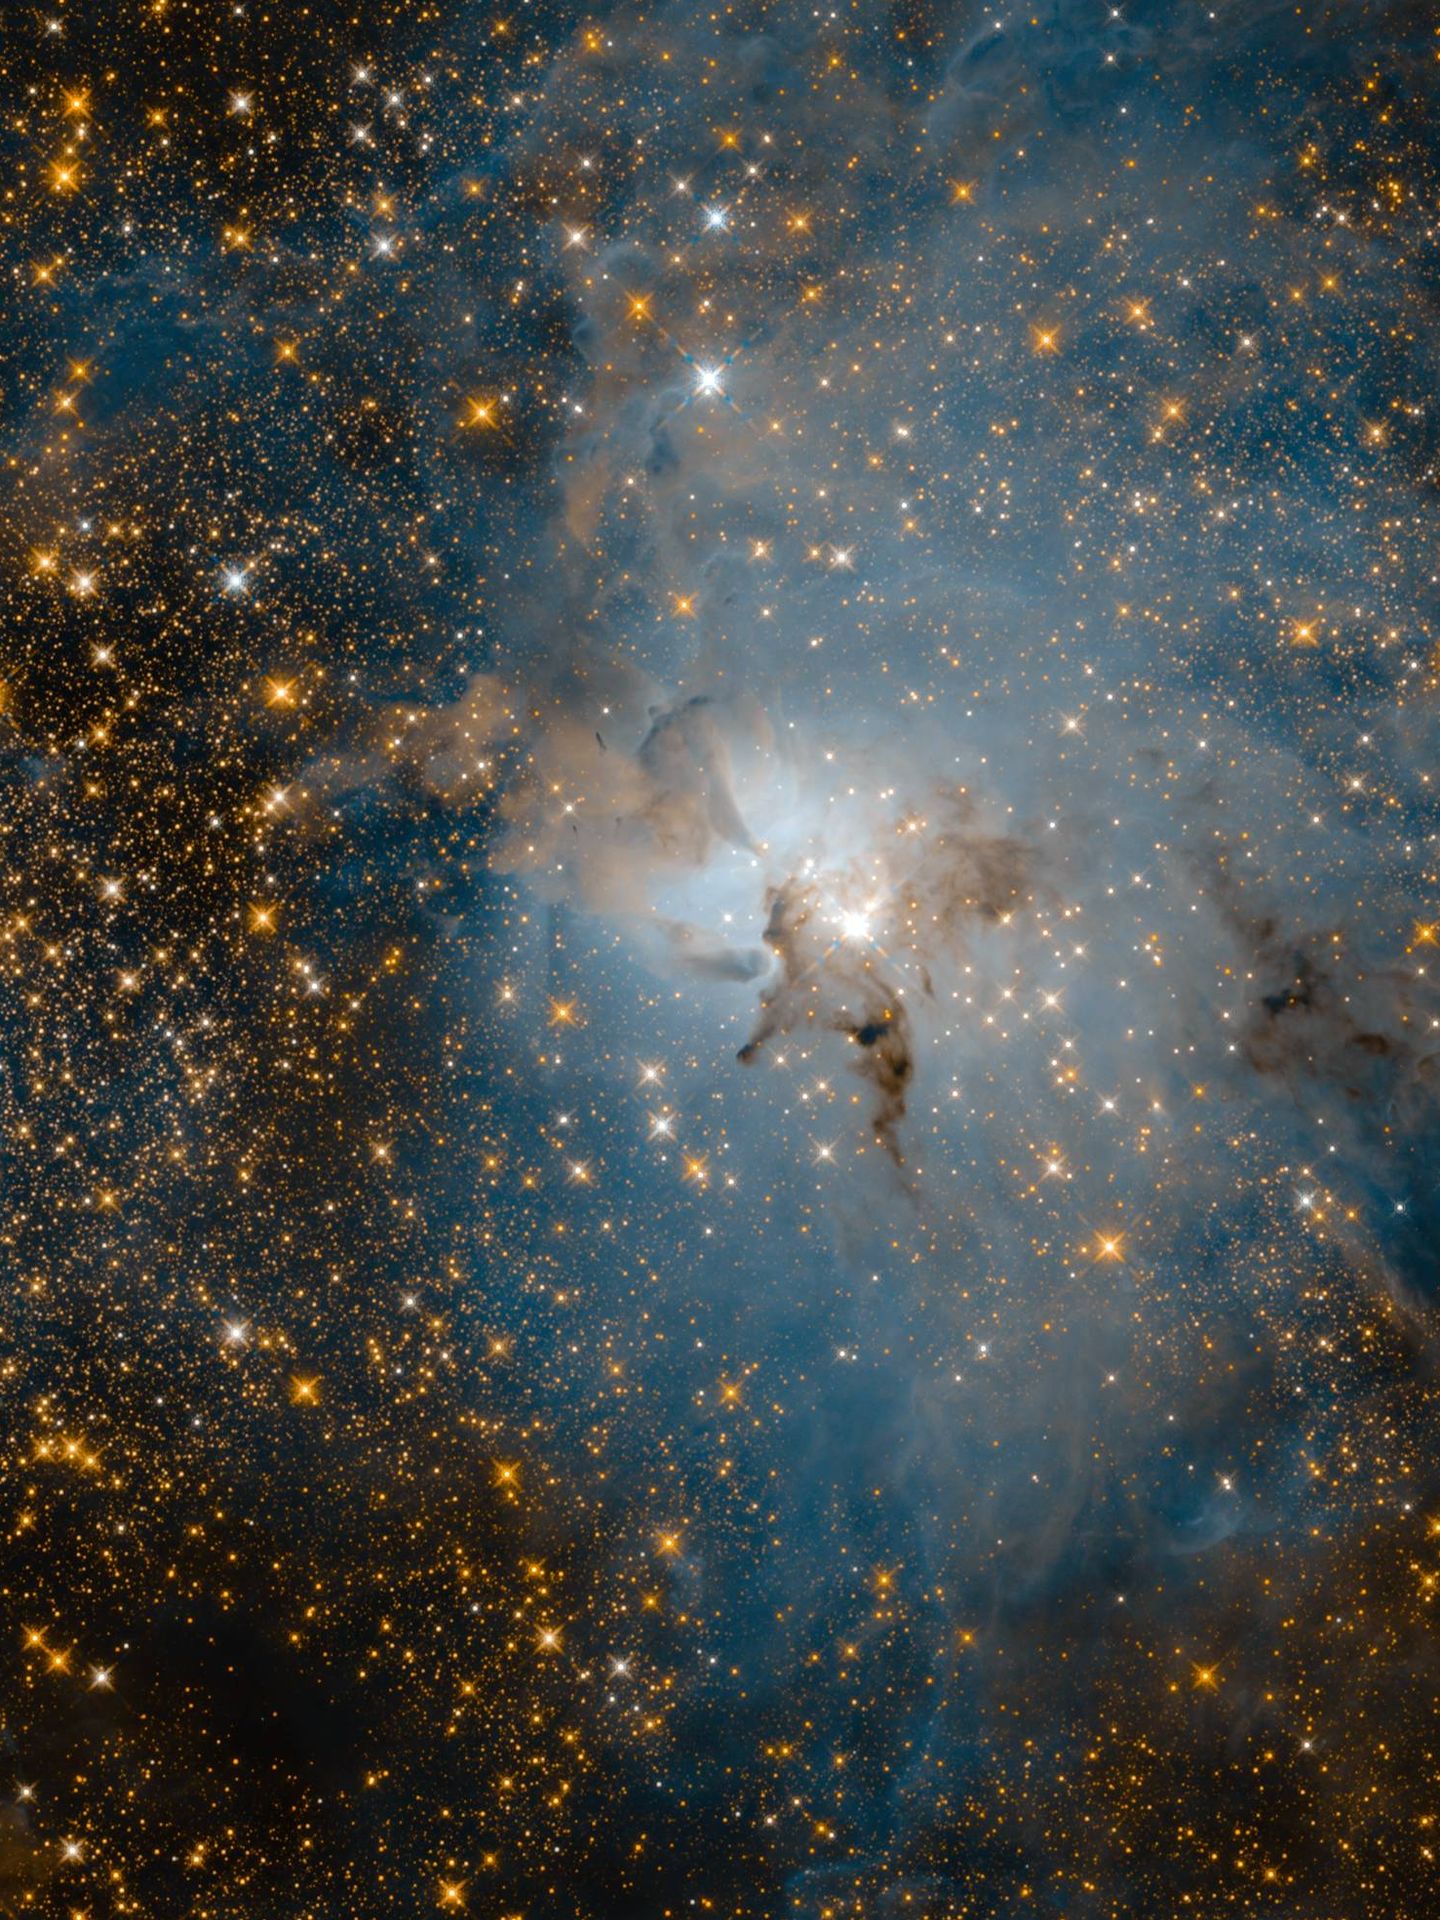 Nebulosa laguna tiene una estrella en el centro con 32 veces más masa que el Sol. Distancia aproximada:  4.000 años luz.